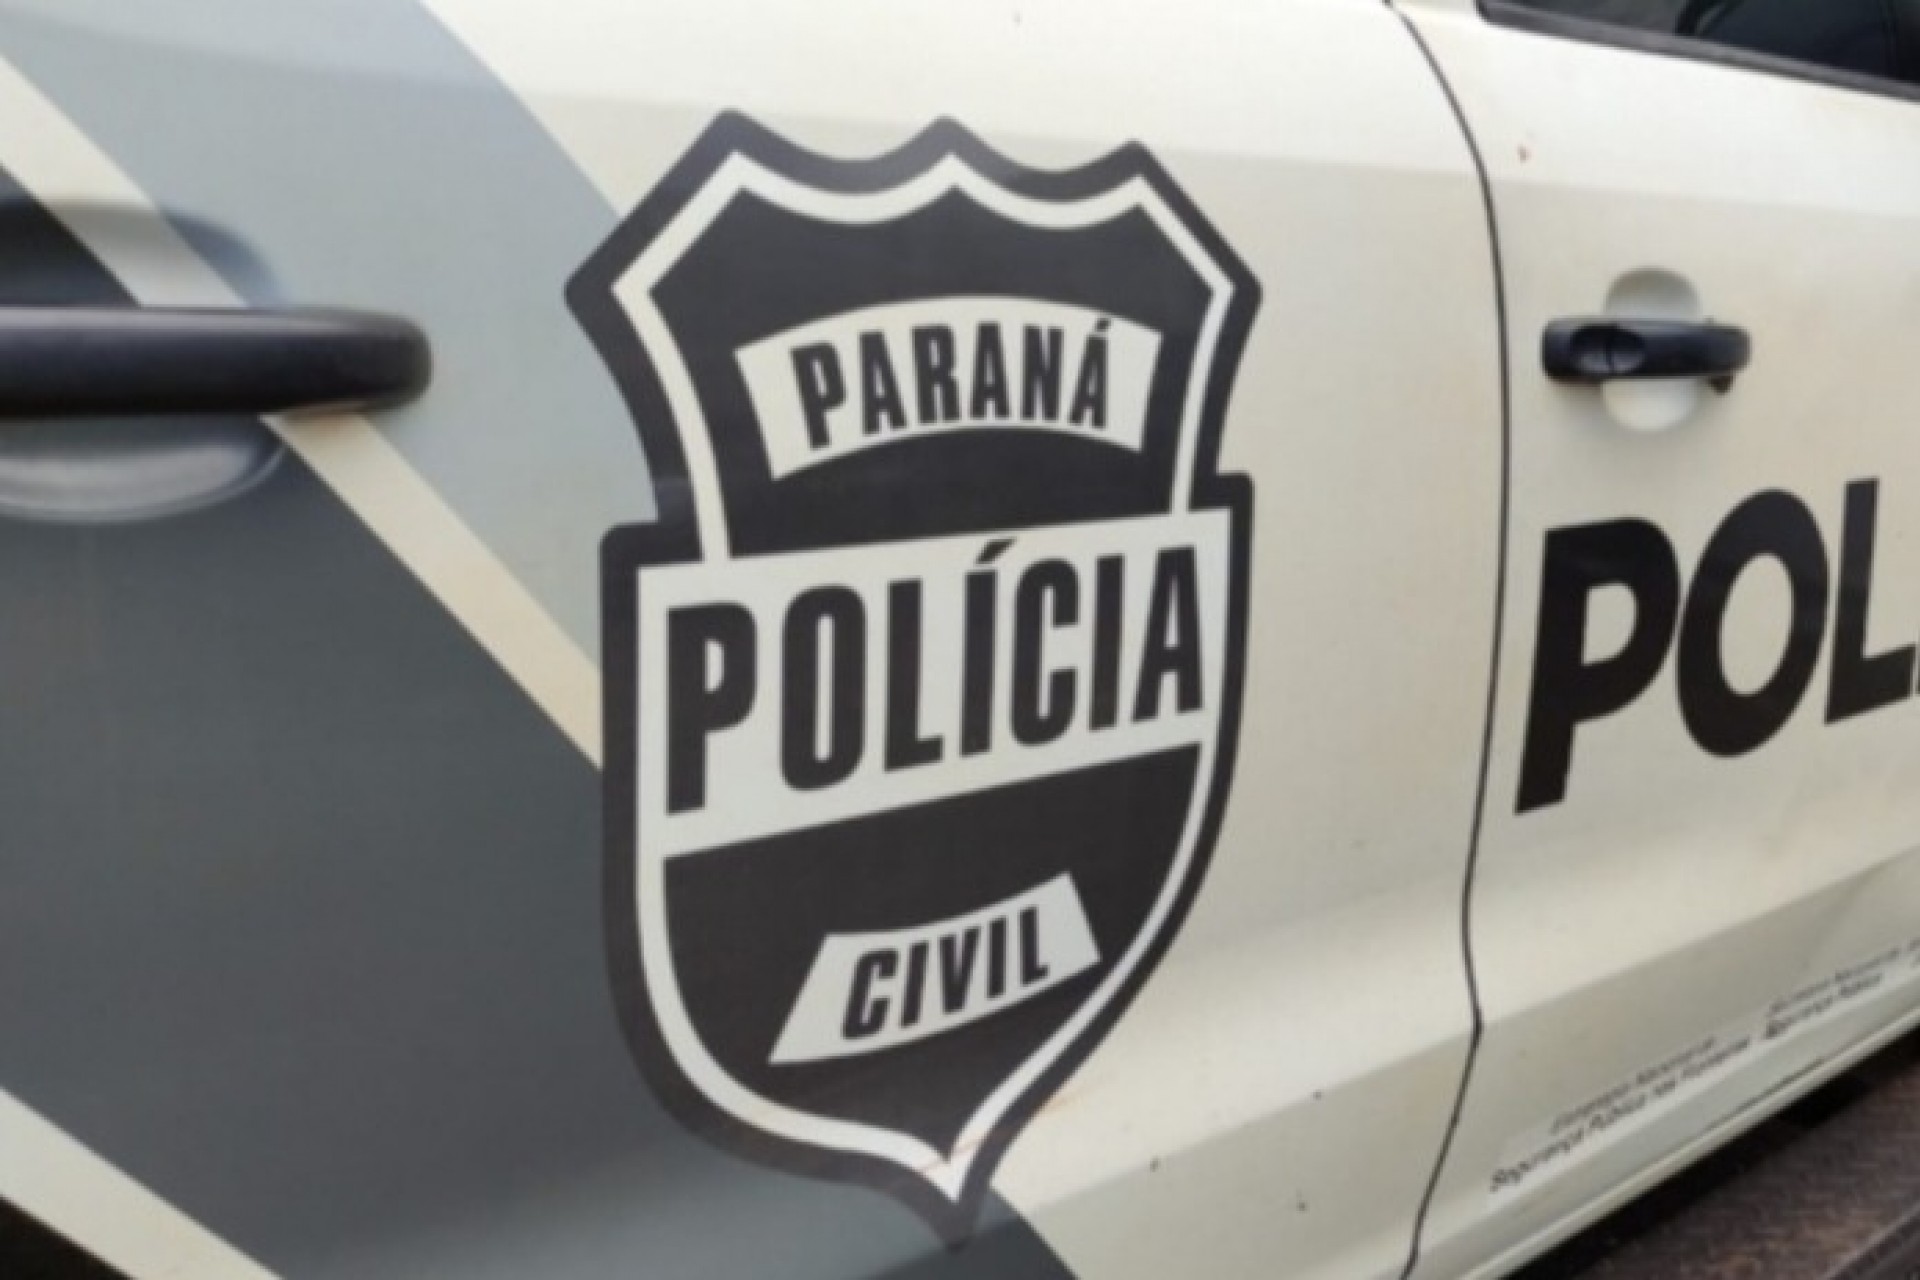 Polícia Civil apura possível caso de injúria racial em escola de Medianeira